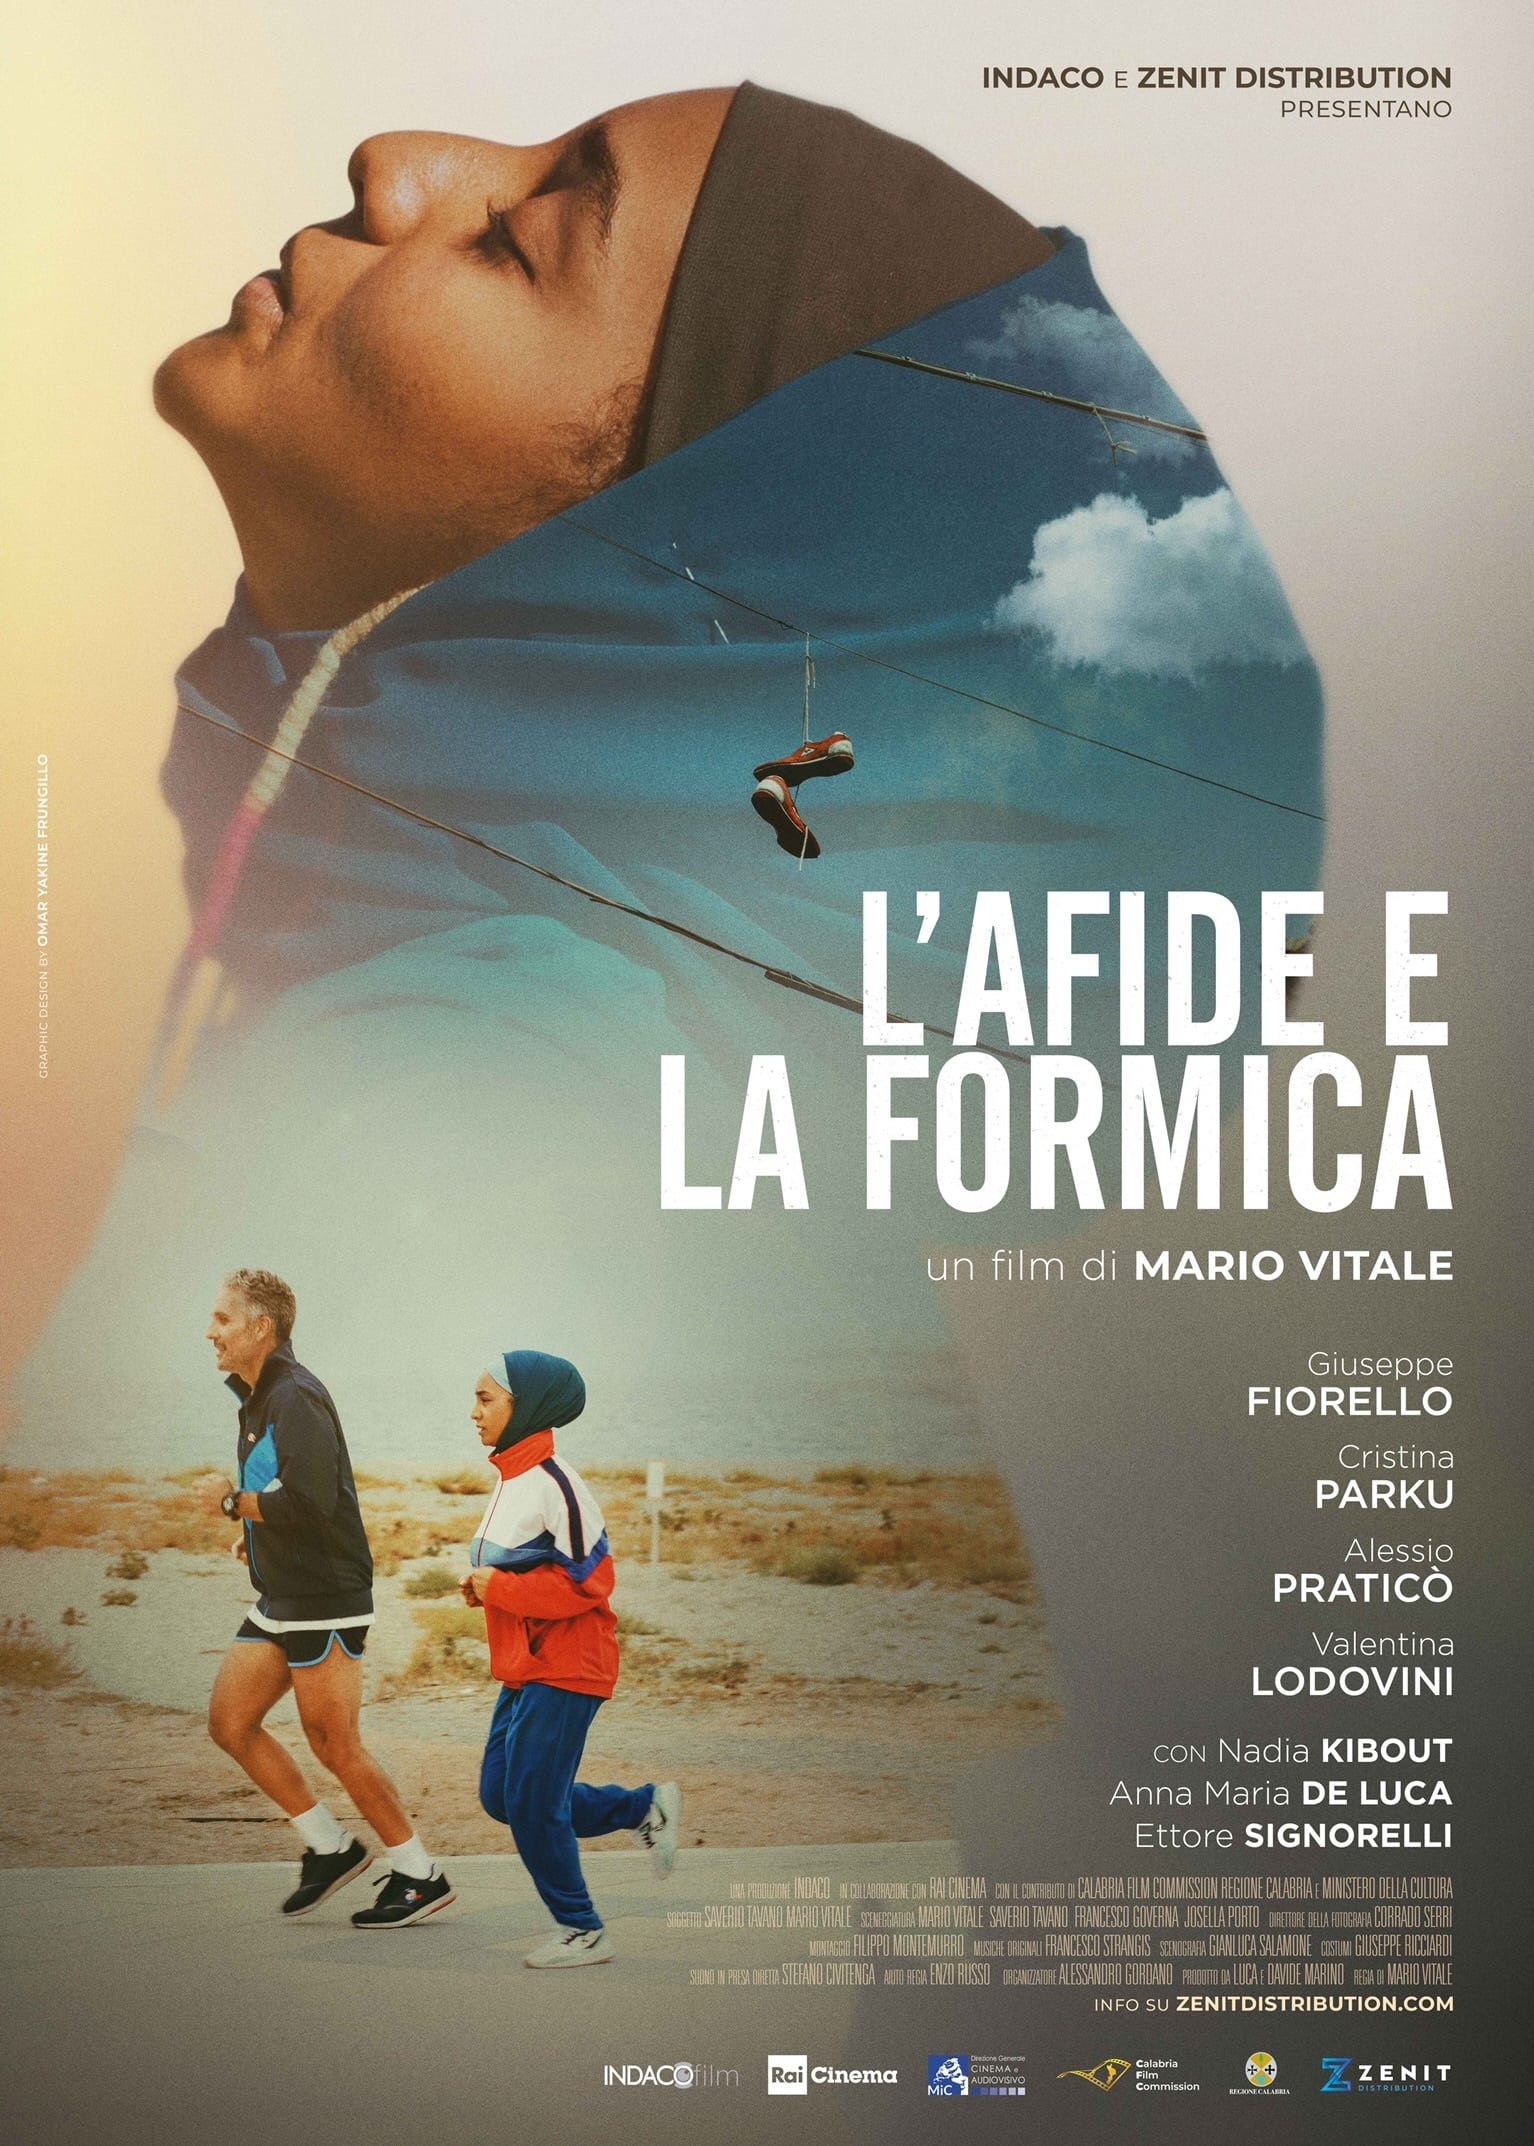 Poster for the movie "L'afide e la formica"